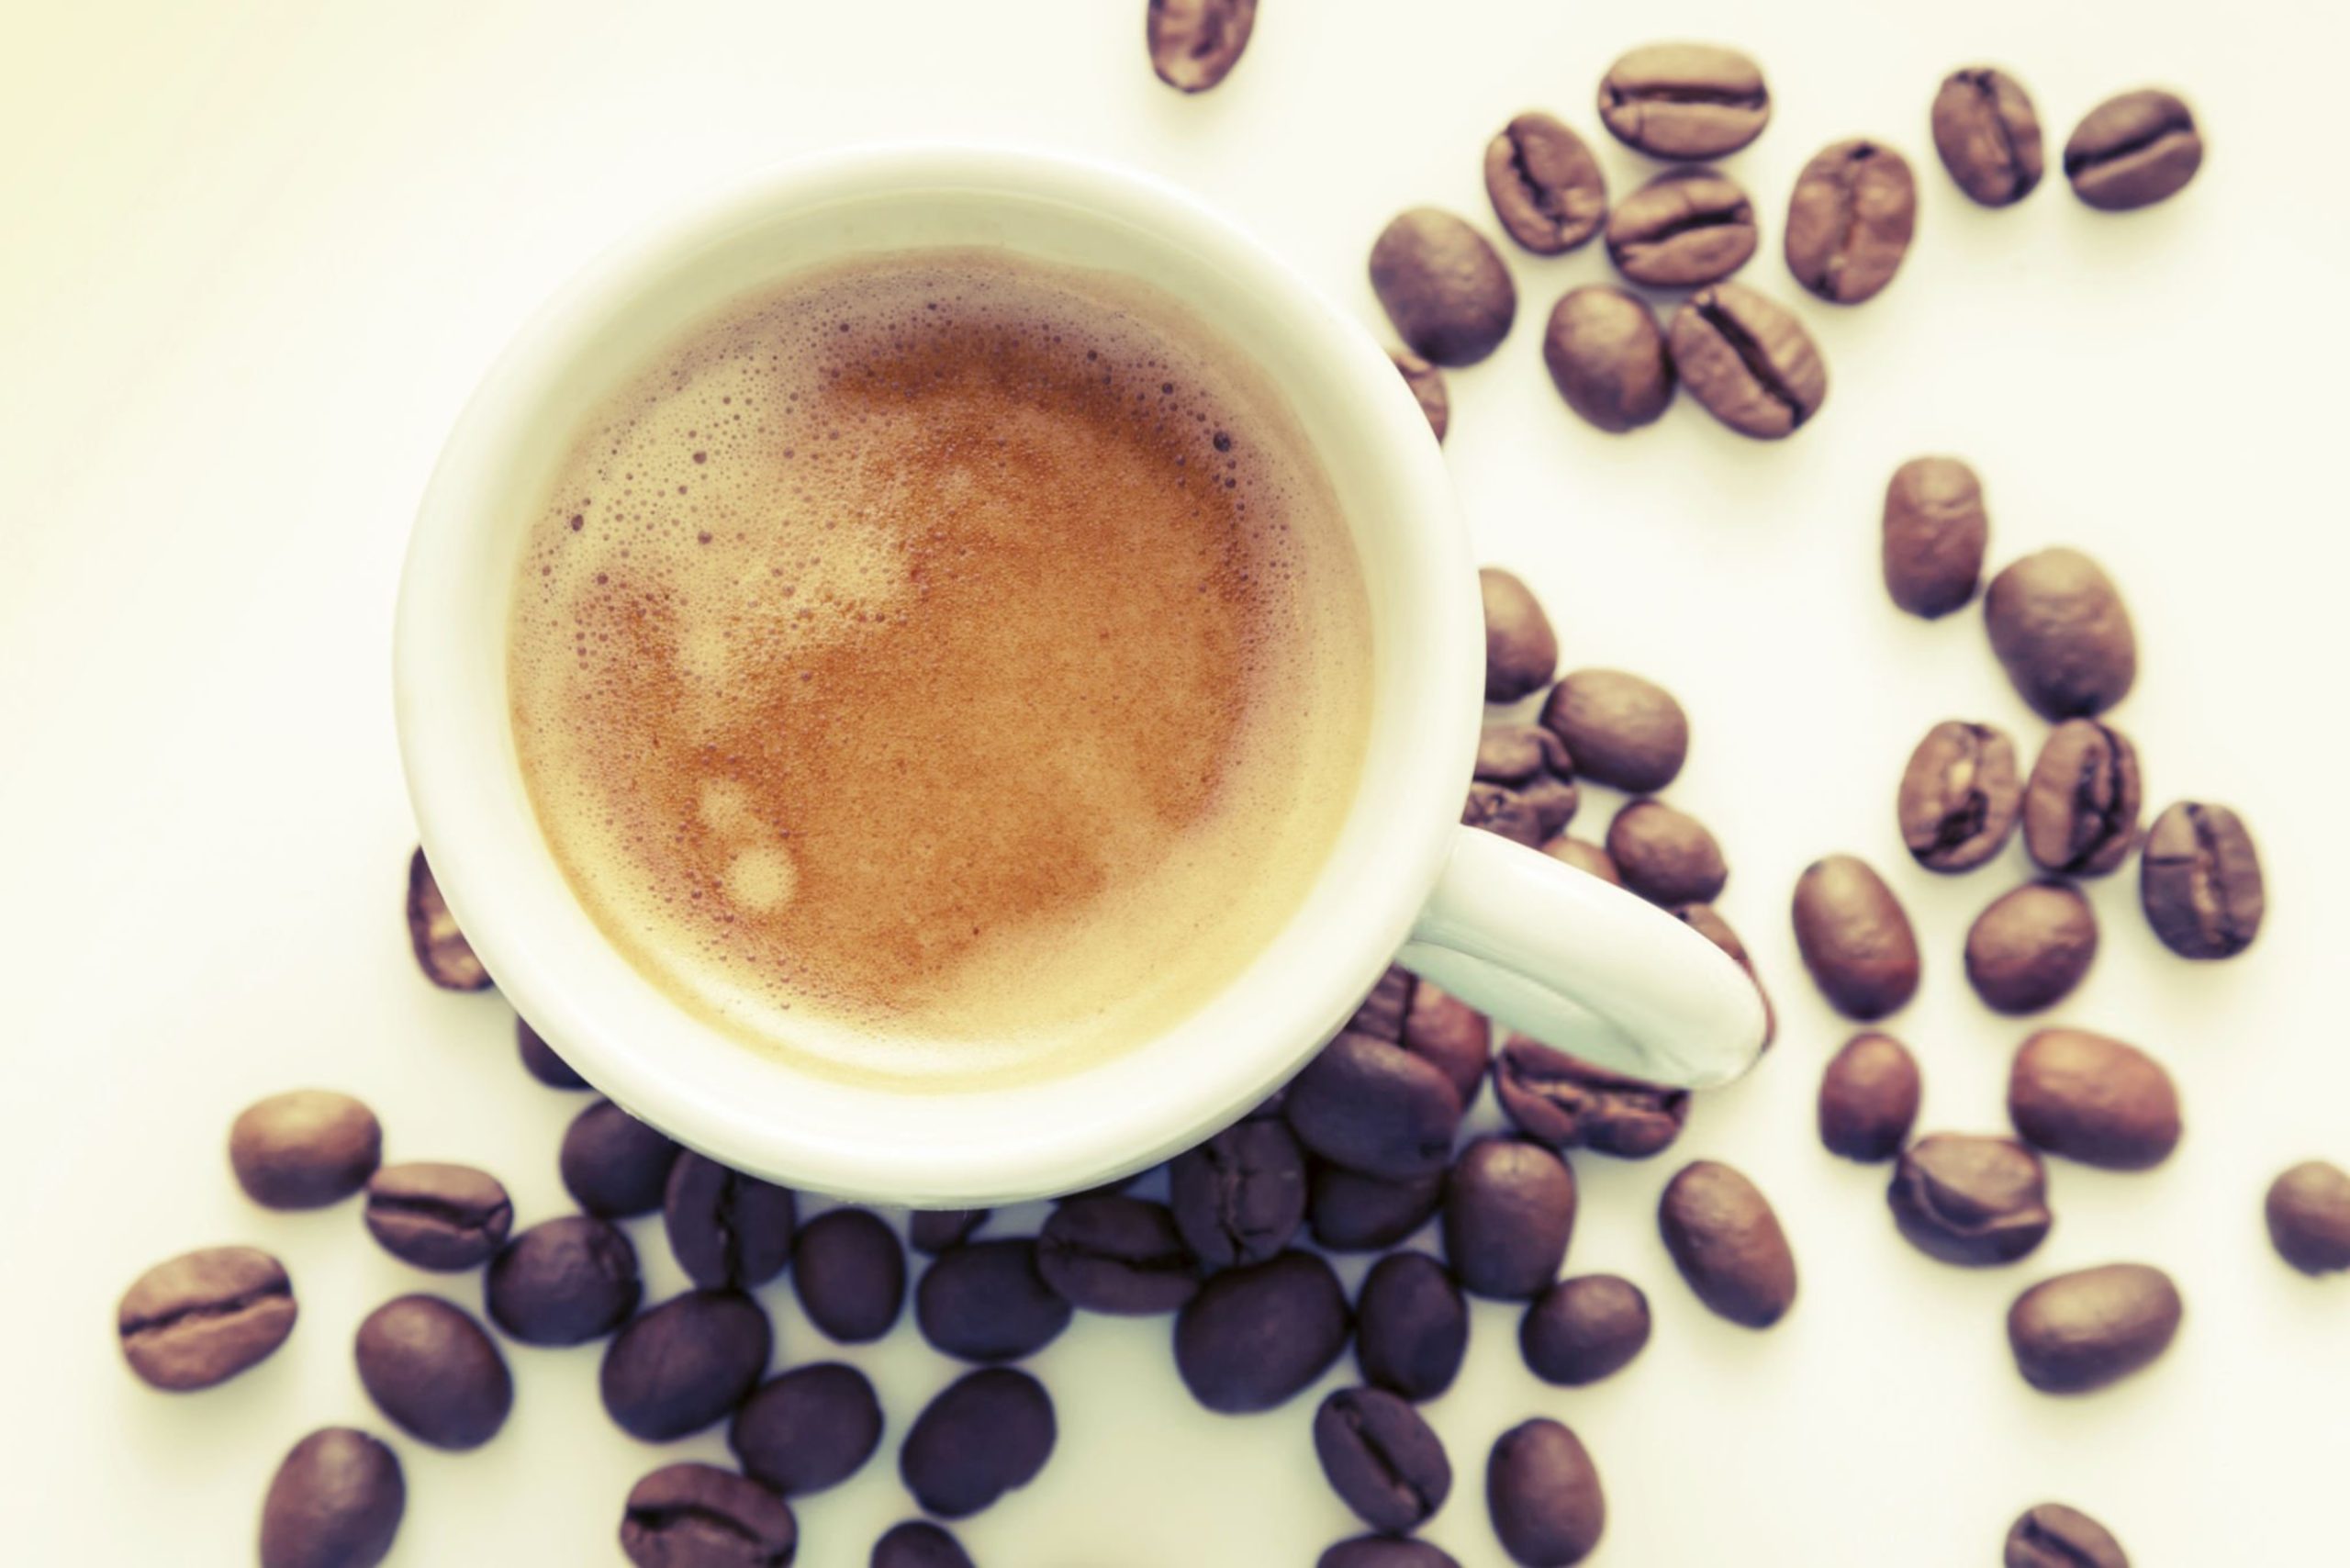  بایدها و نبایدها در خرید قهوه ترکیبی